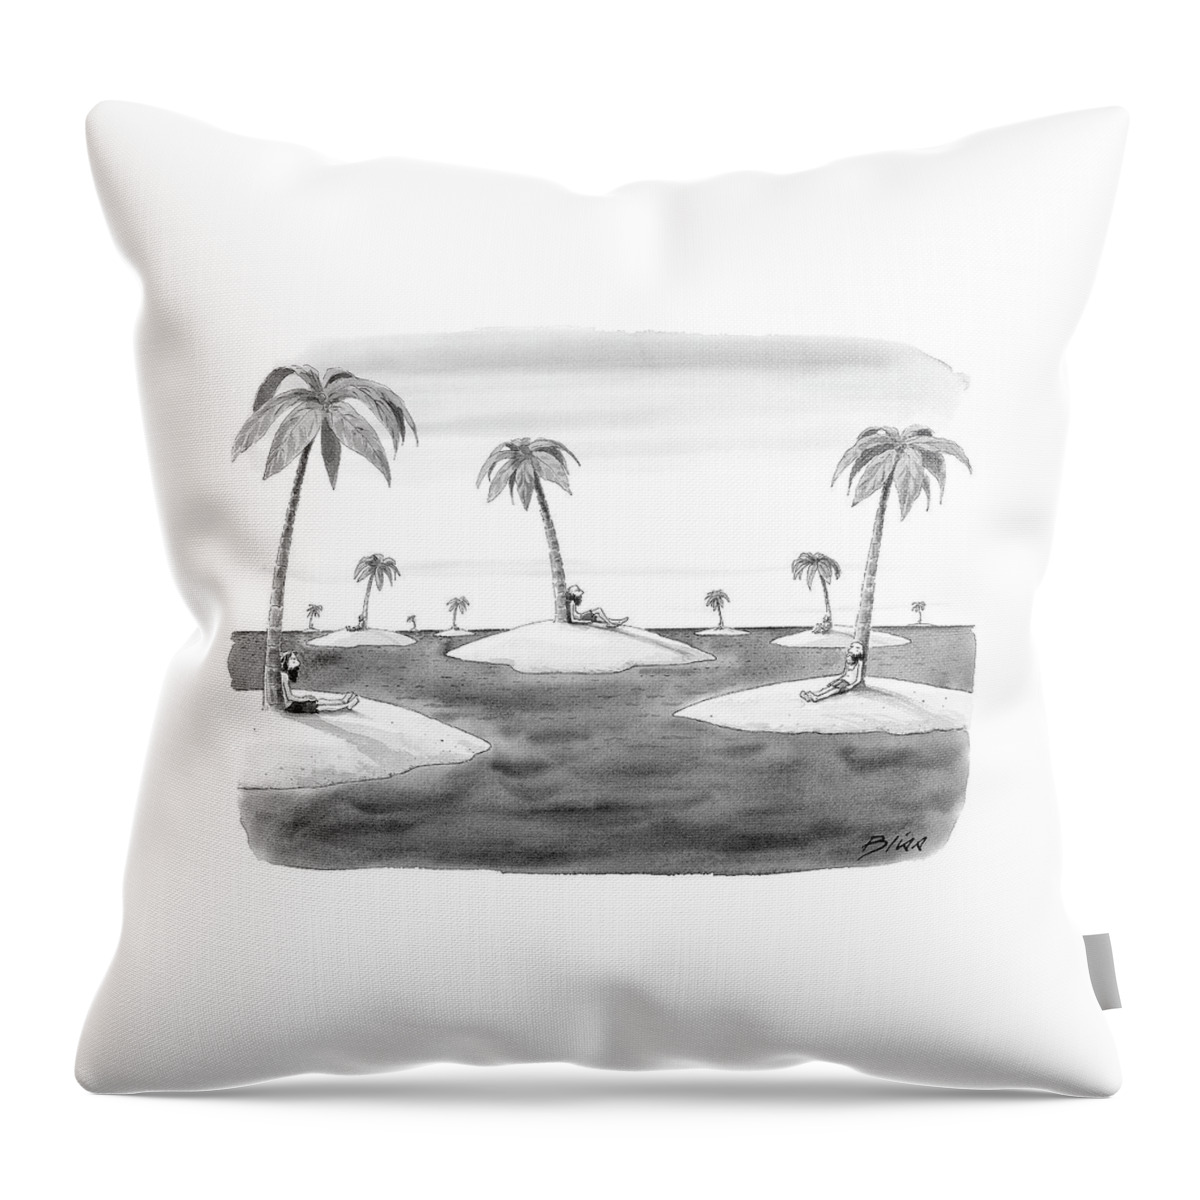 Many Desert Islands Throw Pillow